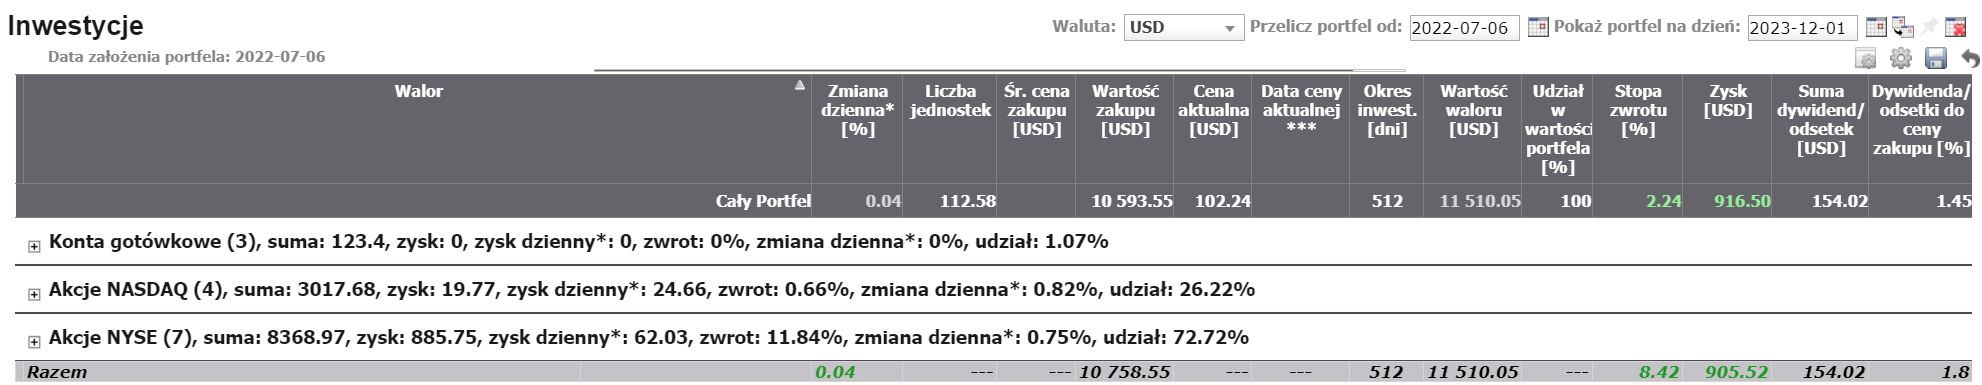 Dywidendy w Bogatyalbobiedny.pl. Portfel amerykański - całkowita stopa zwrotu (kapitał + dywidendy)